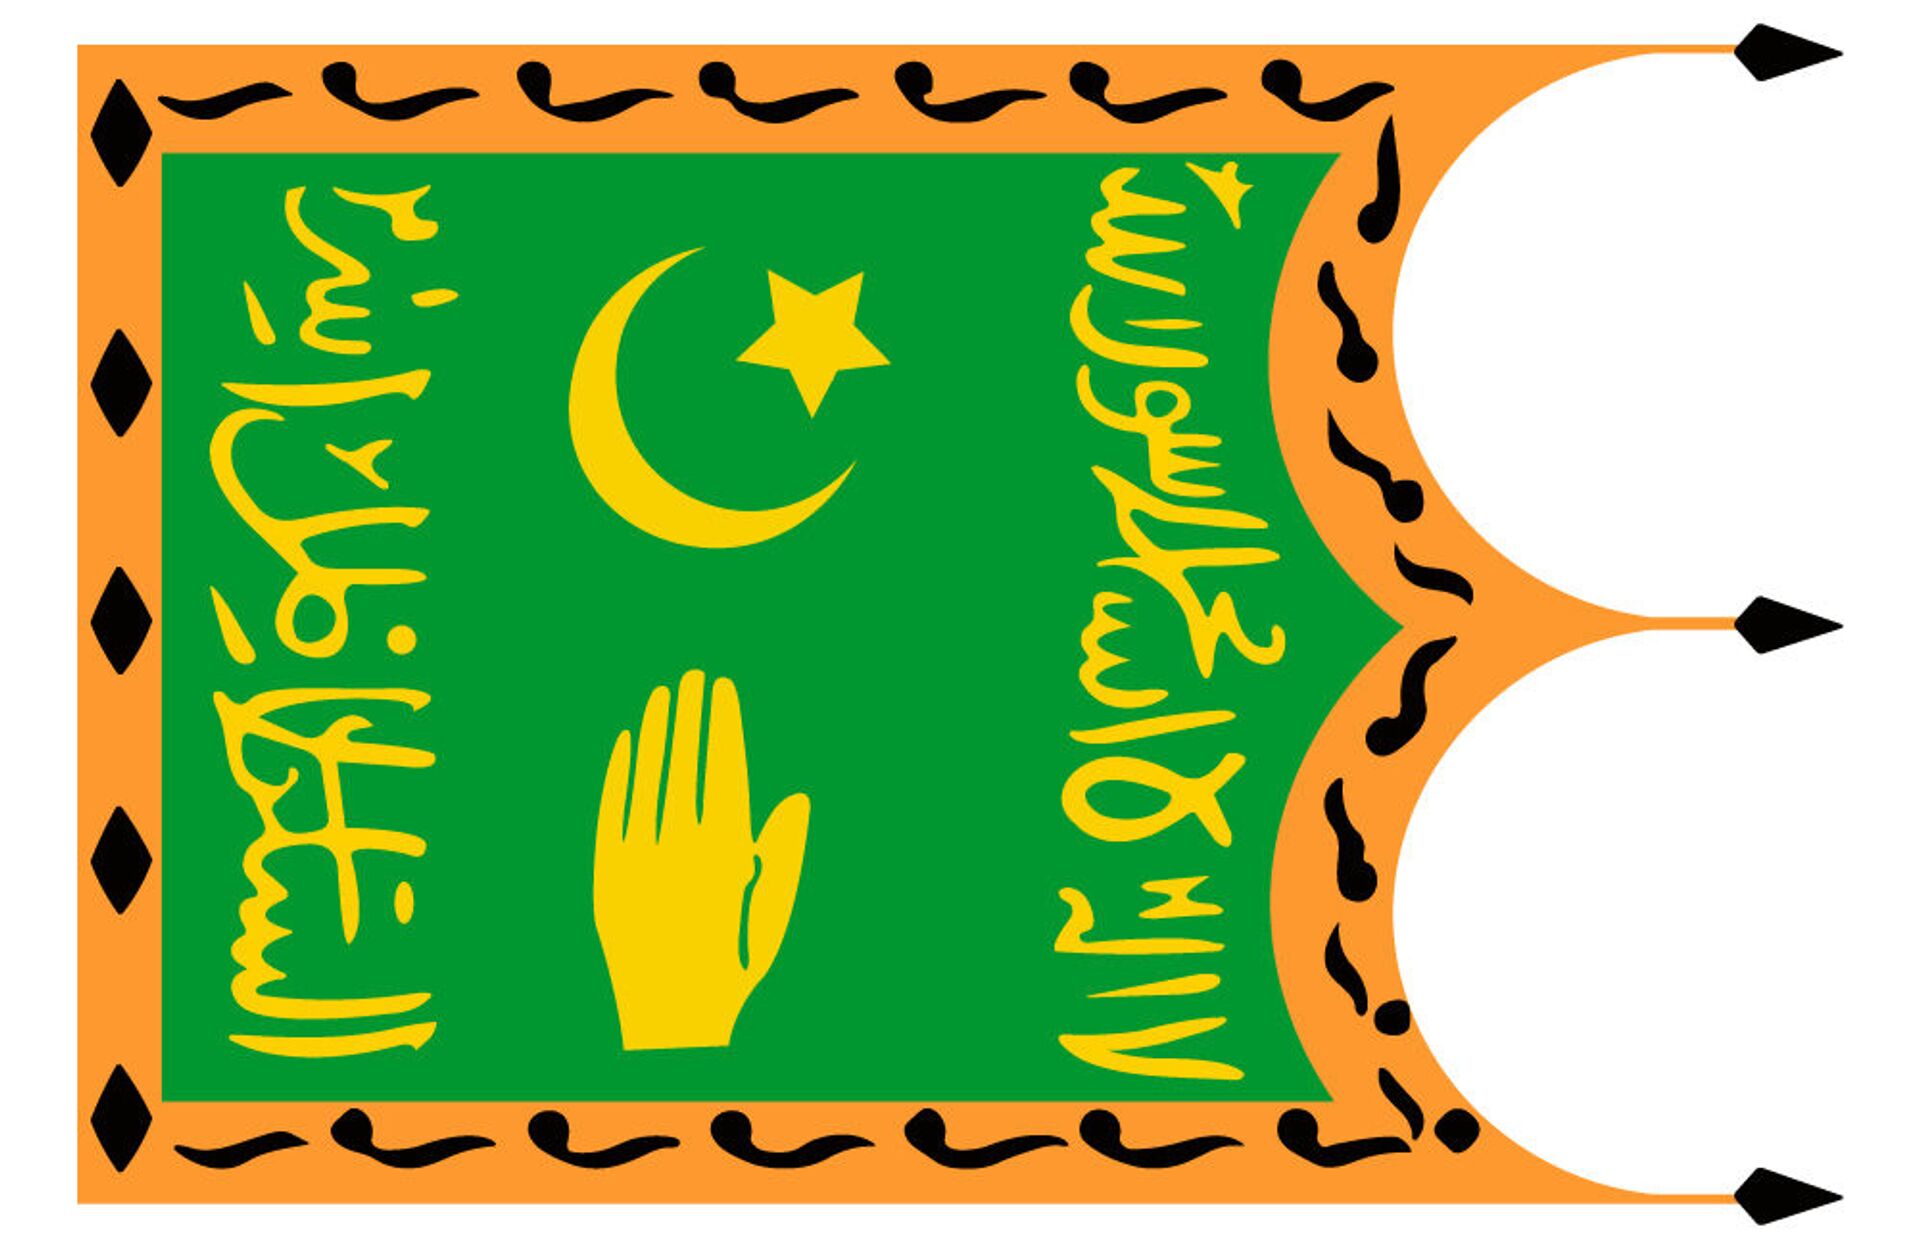 Примерный внешний вид флага Бухарского эмирата, утвержденный в 1868 году - Sputnik Узбекистан, 1920, 18.11.2021